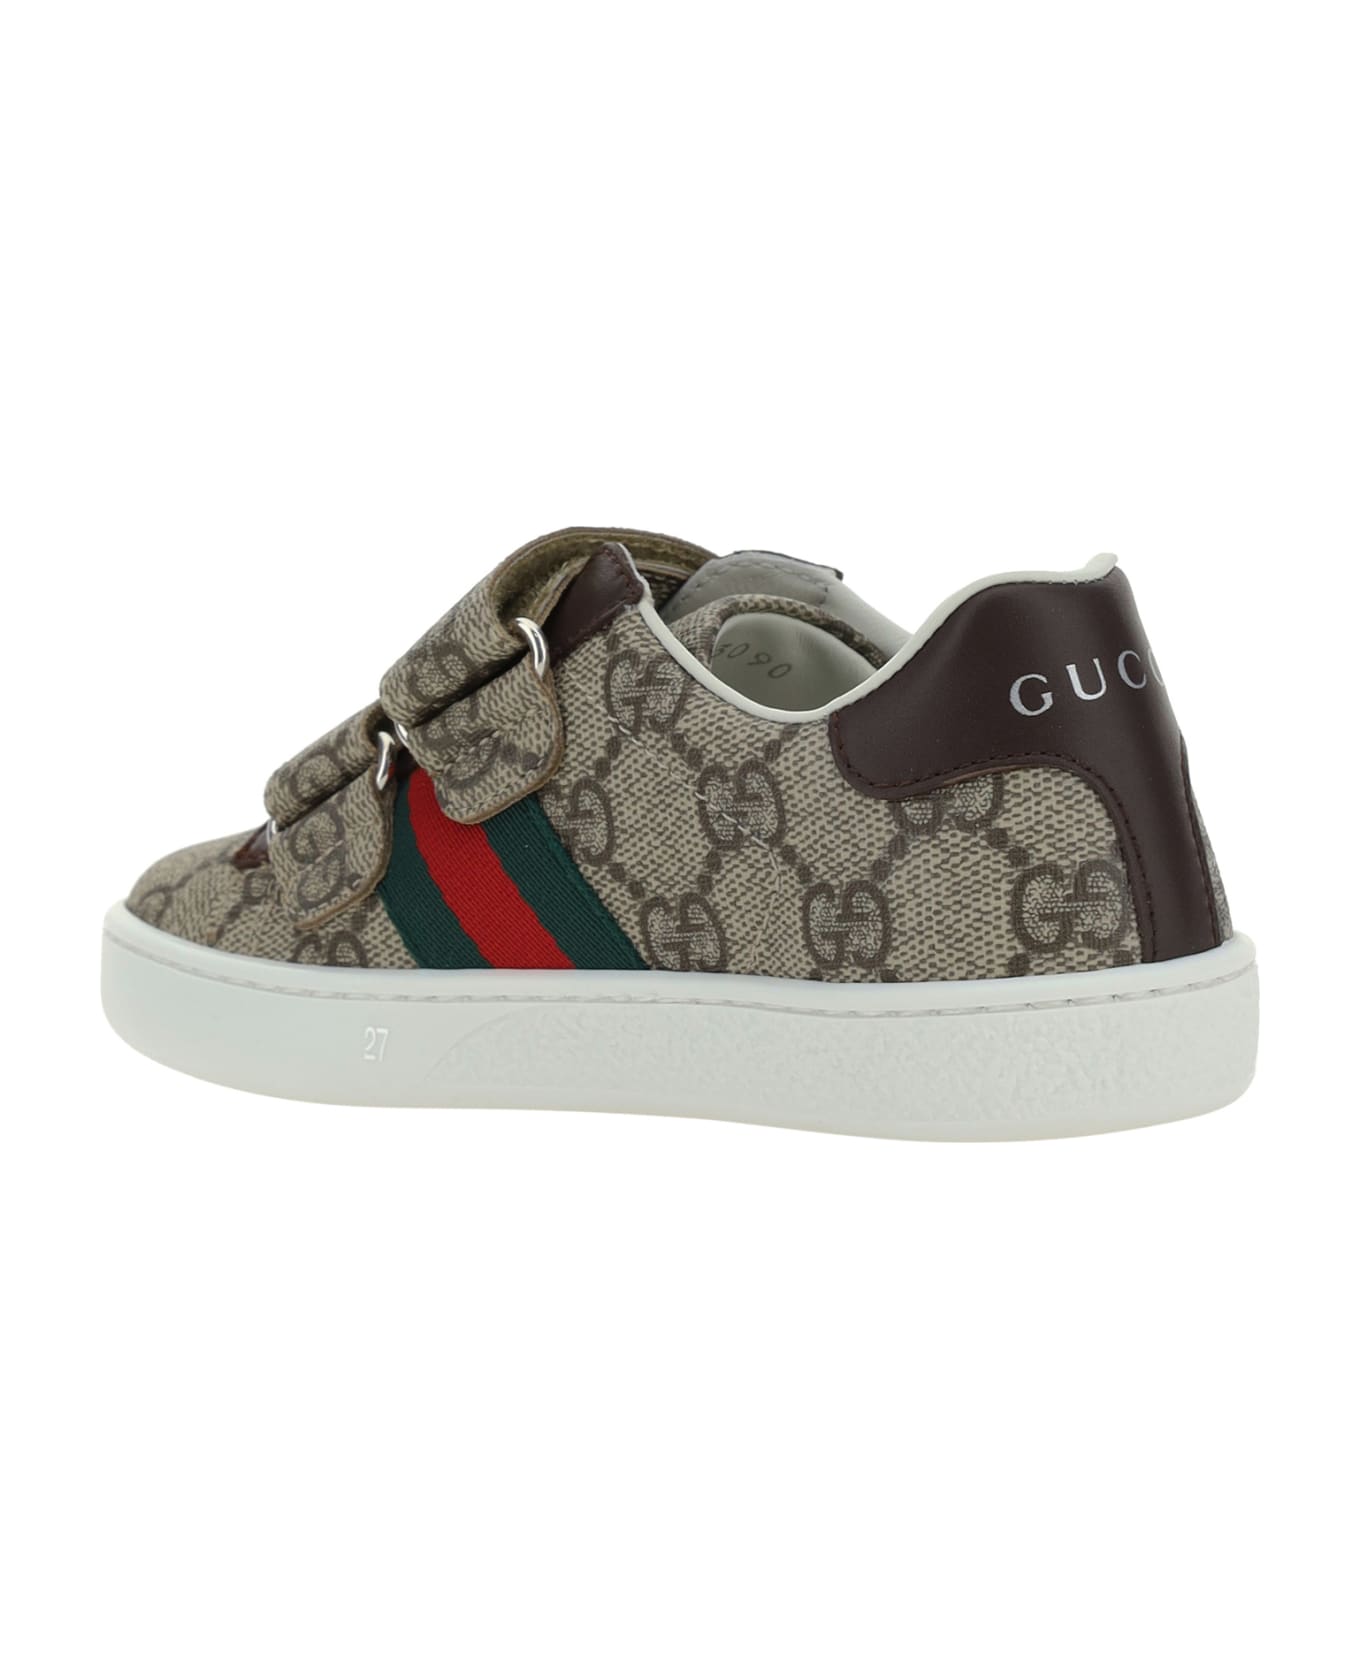 Gucci Sneakers For Boy - MultiColour シューズ